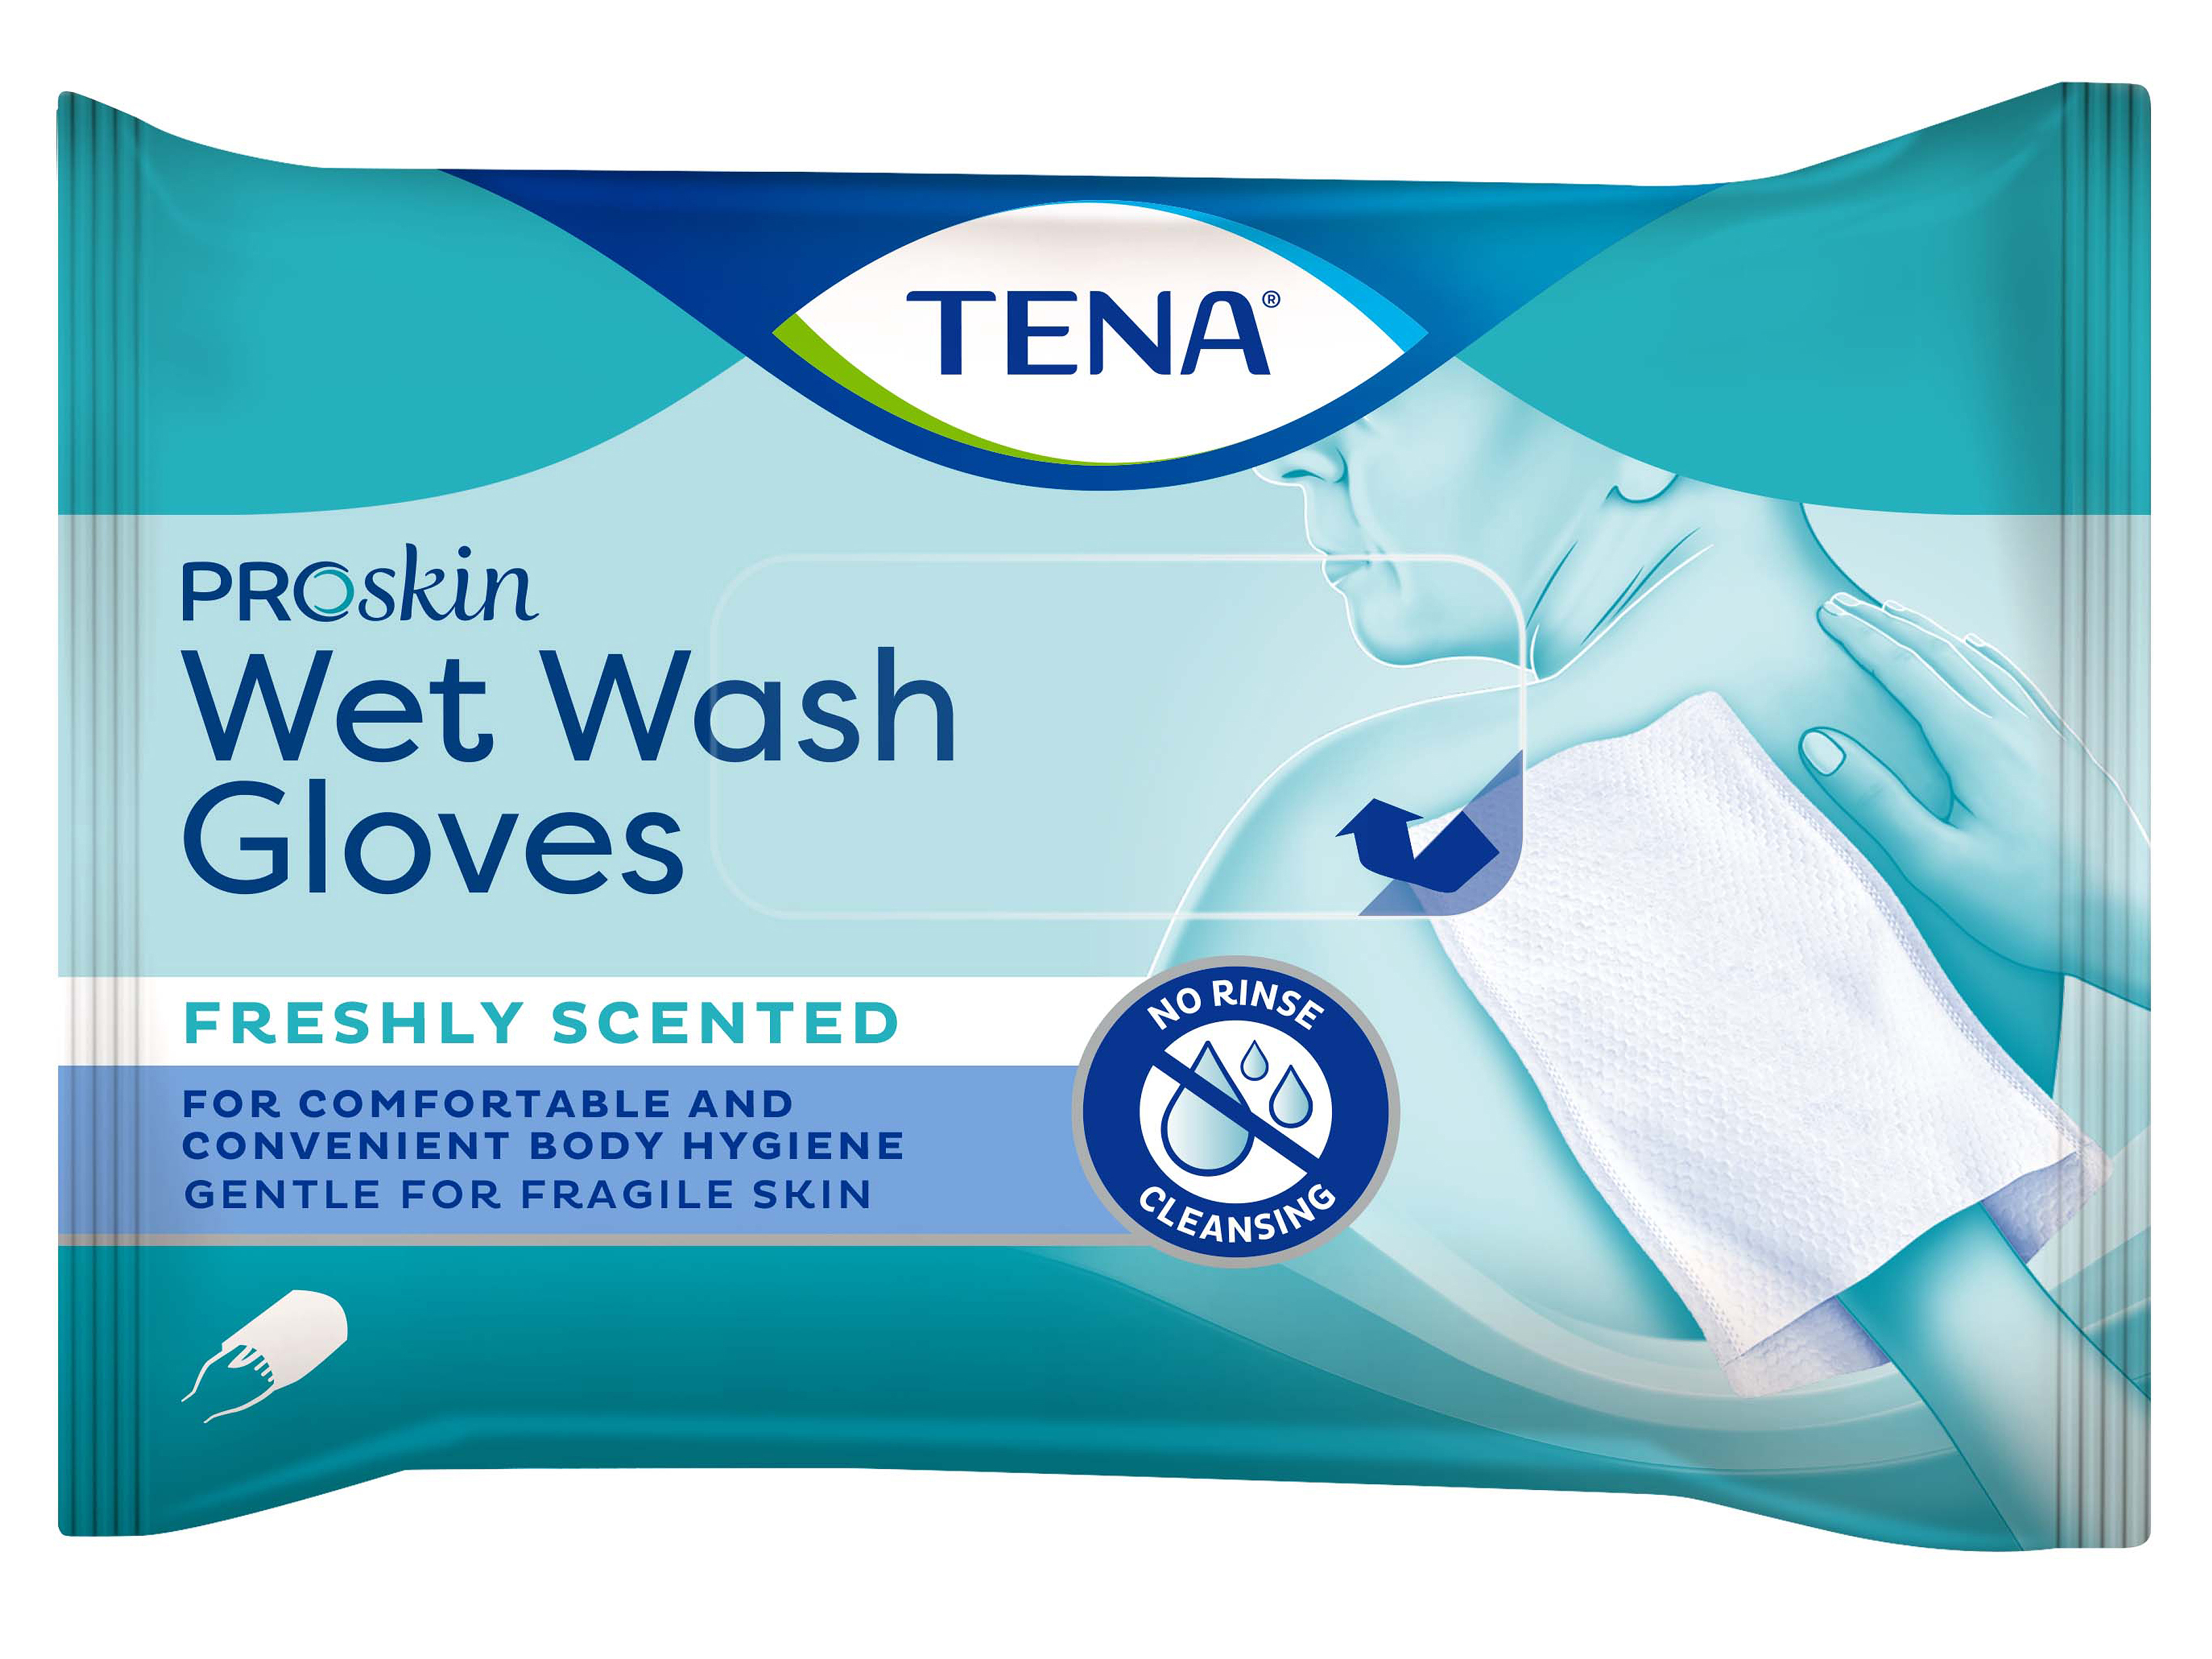 Proskin Wet Wash Glove, 8 stk